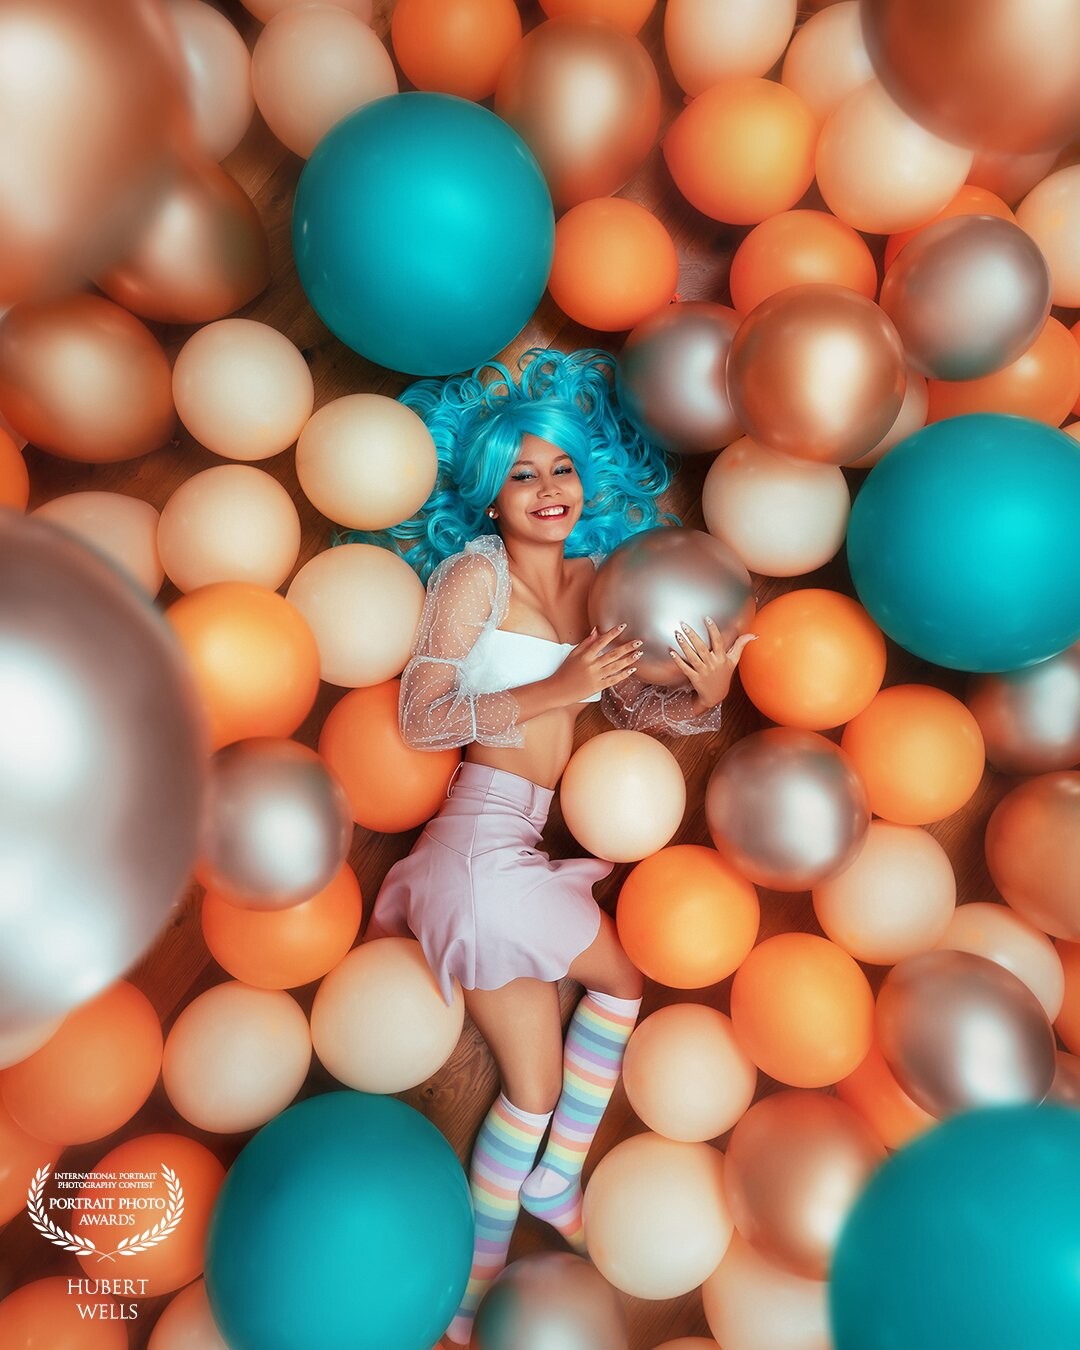 No hace falta salir de casa, nuestra modelo Esmeralda<br />
posó maravillosamente para nuestro lente y logramos esta fabulosa fotografía, <br />
En esta ocasión decidimos utilizar globos como elementos  y poner atención especial a la  paleta de colores así logrando combinar su vestimenta y pelo con los elementos!